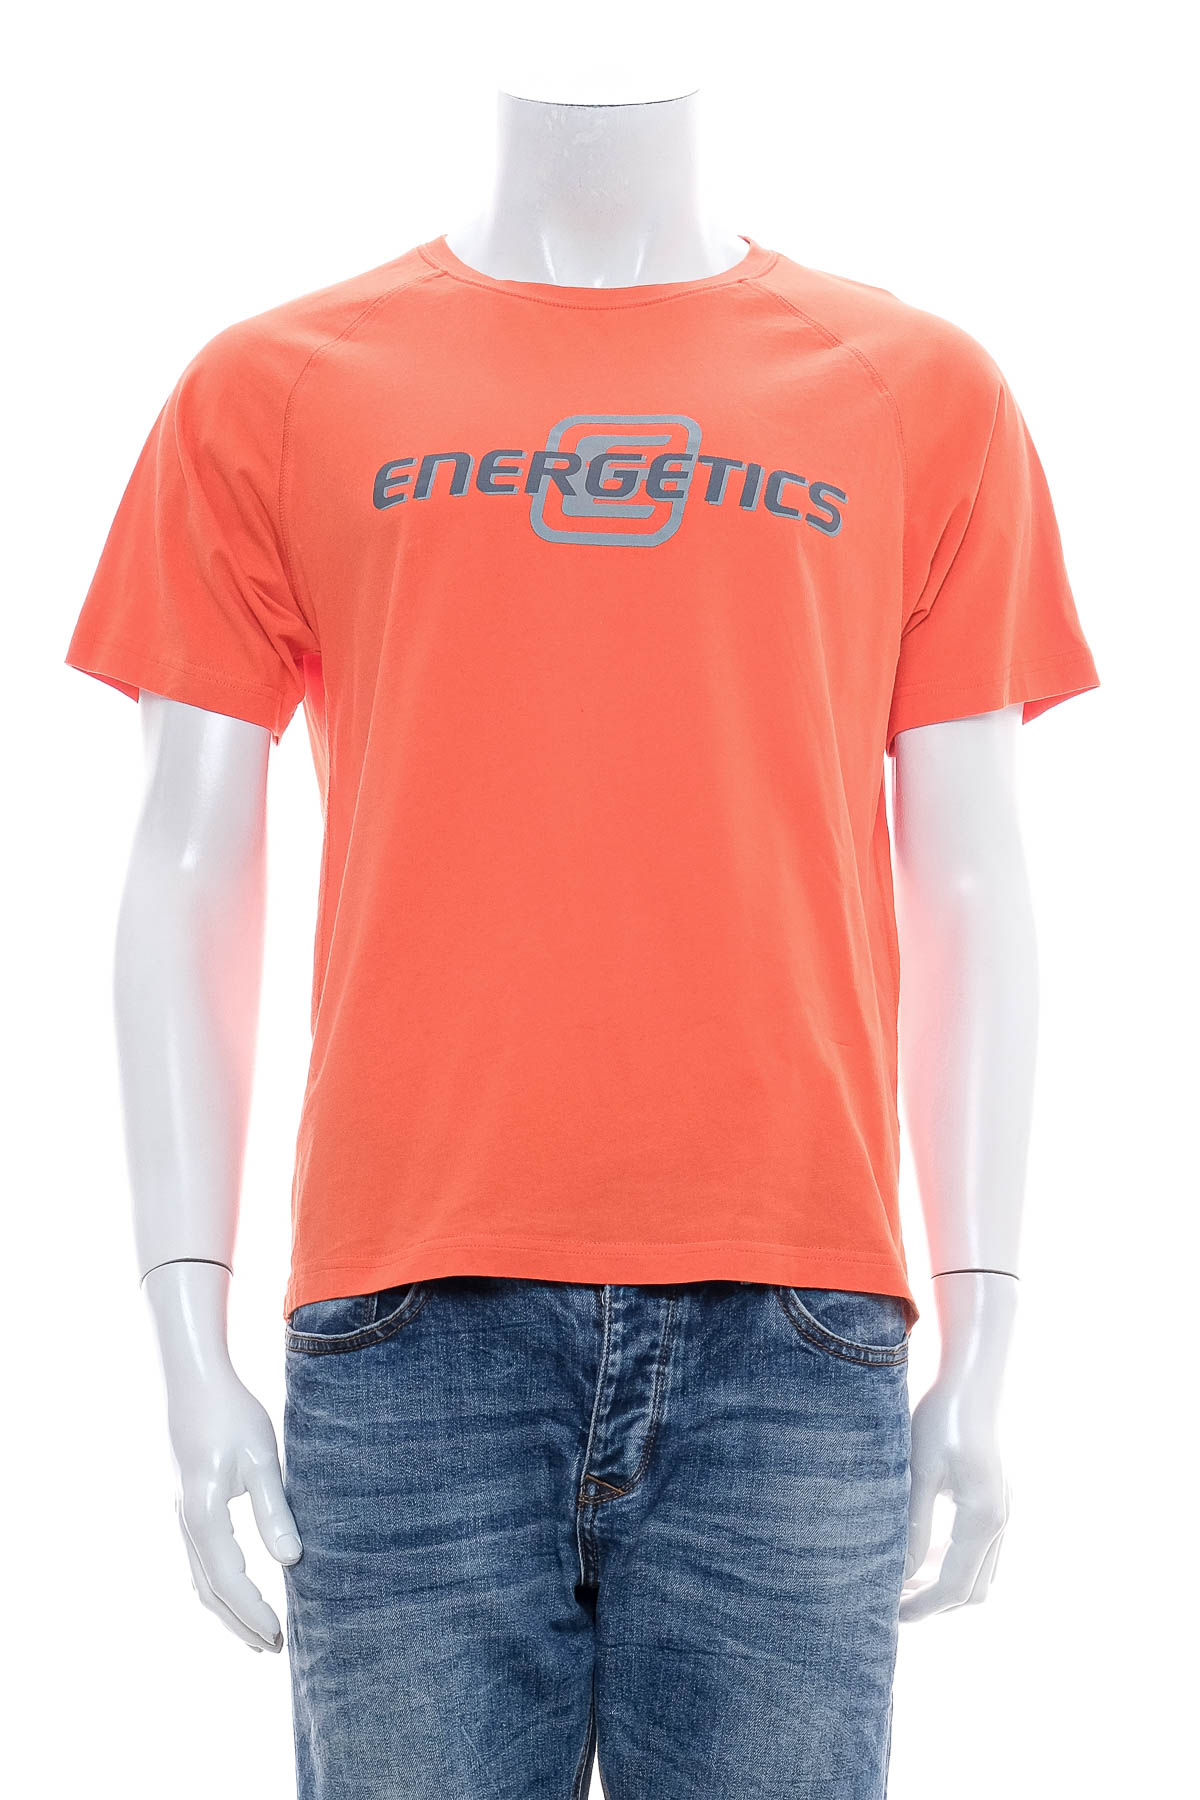 Men's T-shirt - Energetics - 0